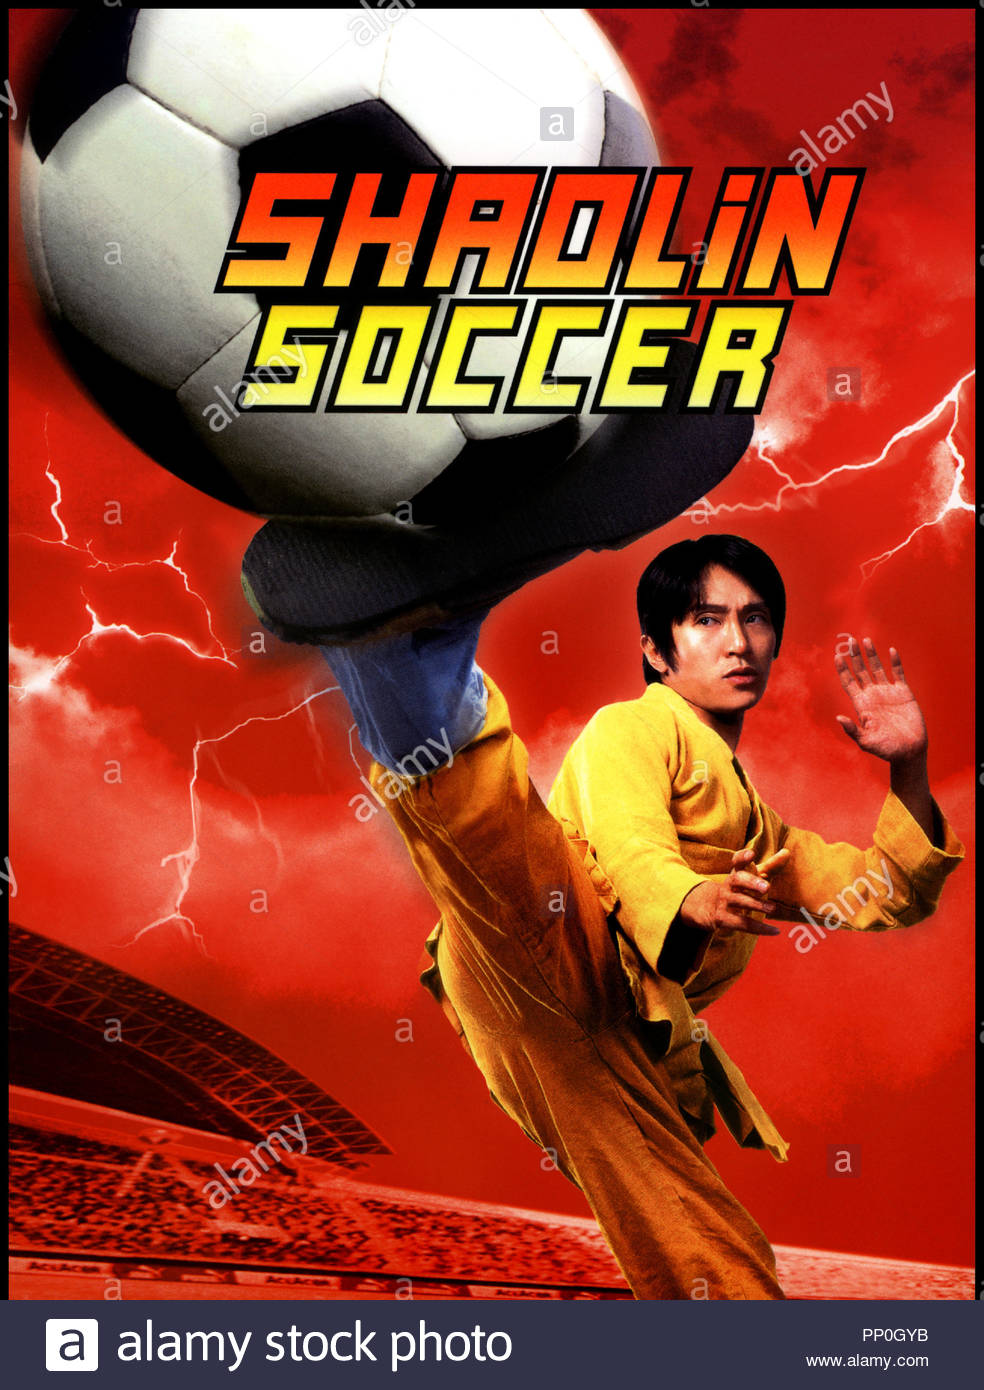 Shaolin Soccer Main Poster